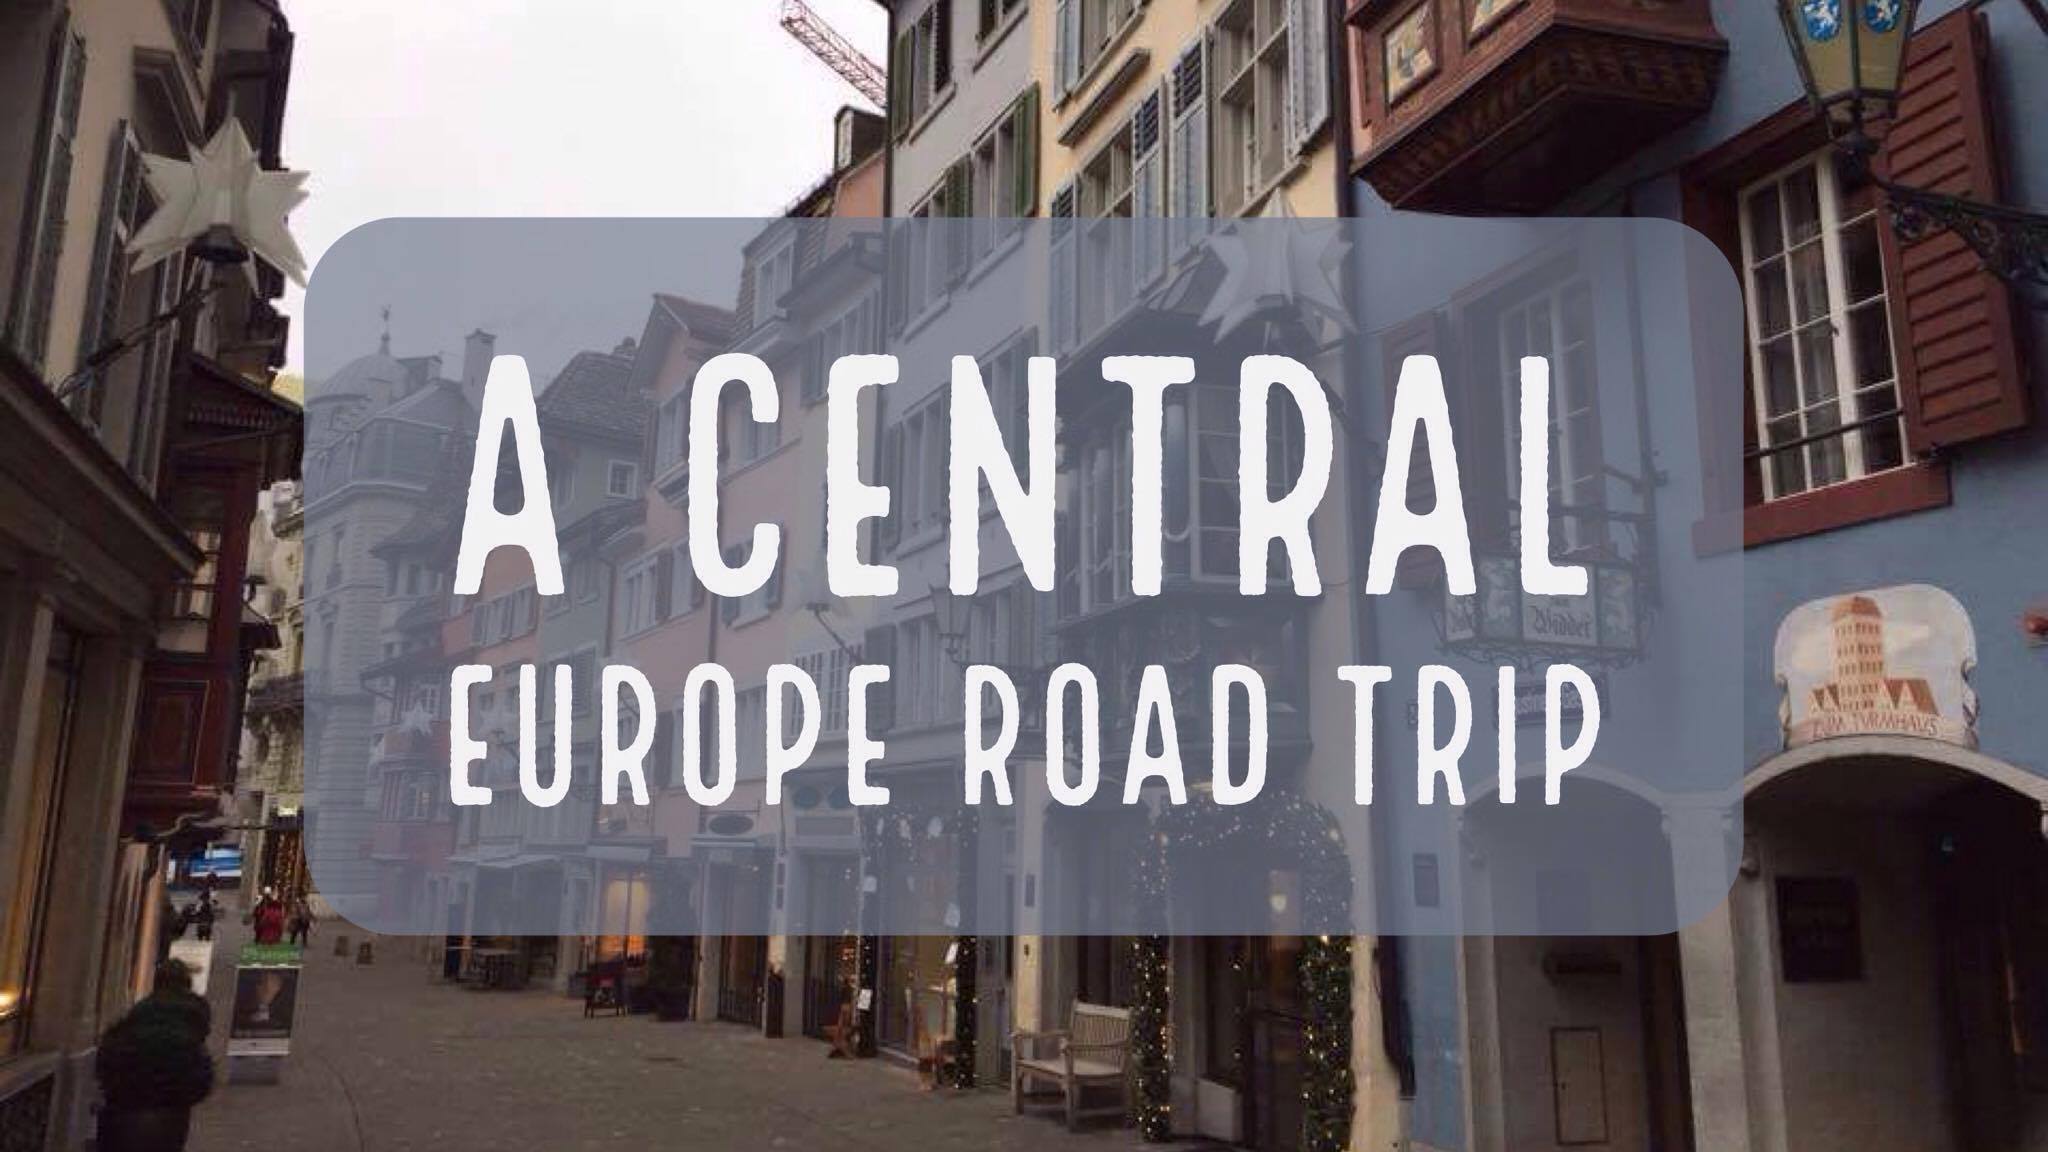 Central Europe Road Trip - Germany, Austria, Liechtenstein and Switzerland | My Wandering Voyage travel blog